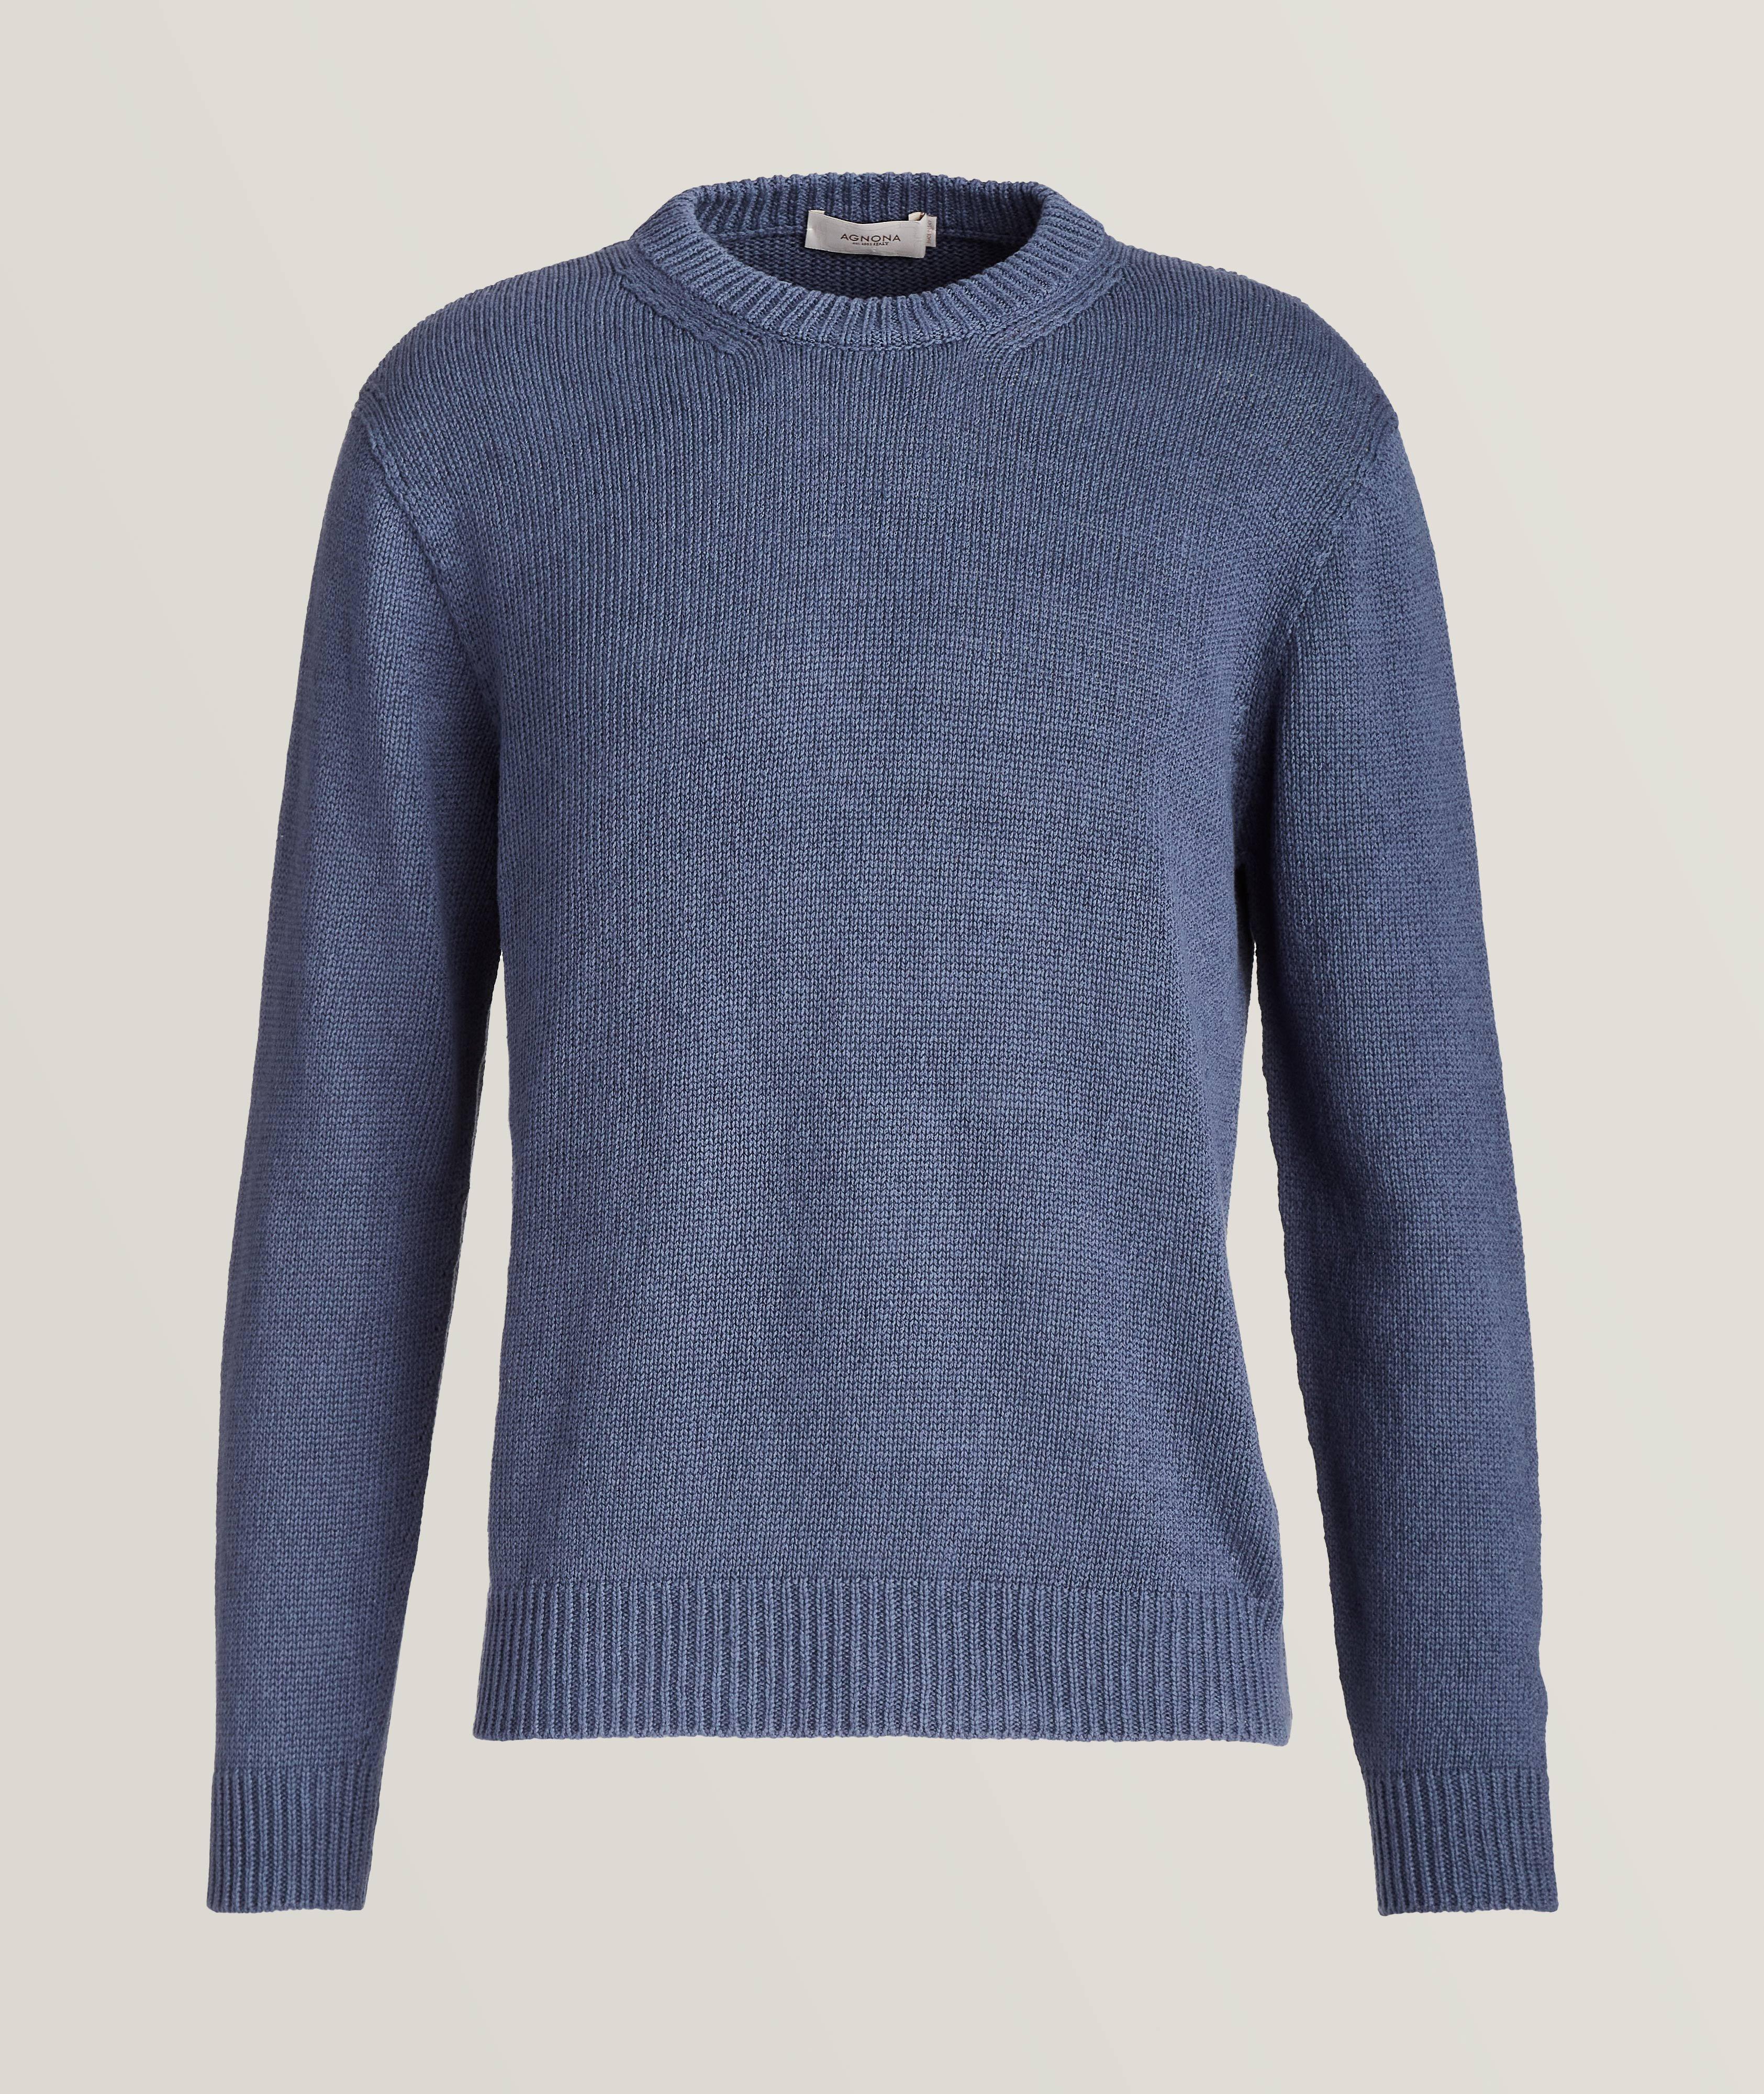 Linen-Cotton Knit Crewneck Sweater image 0